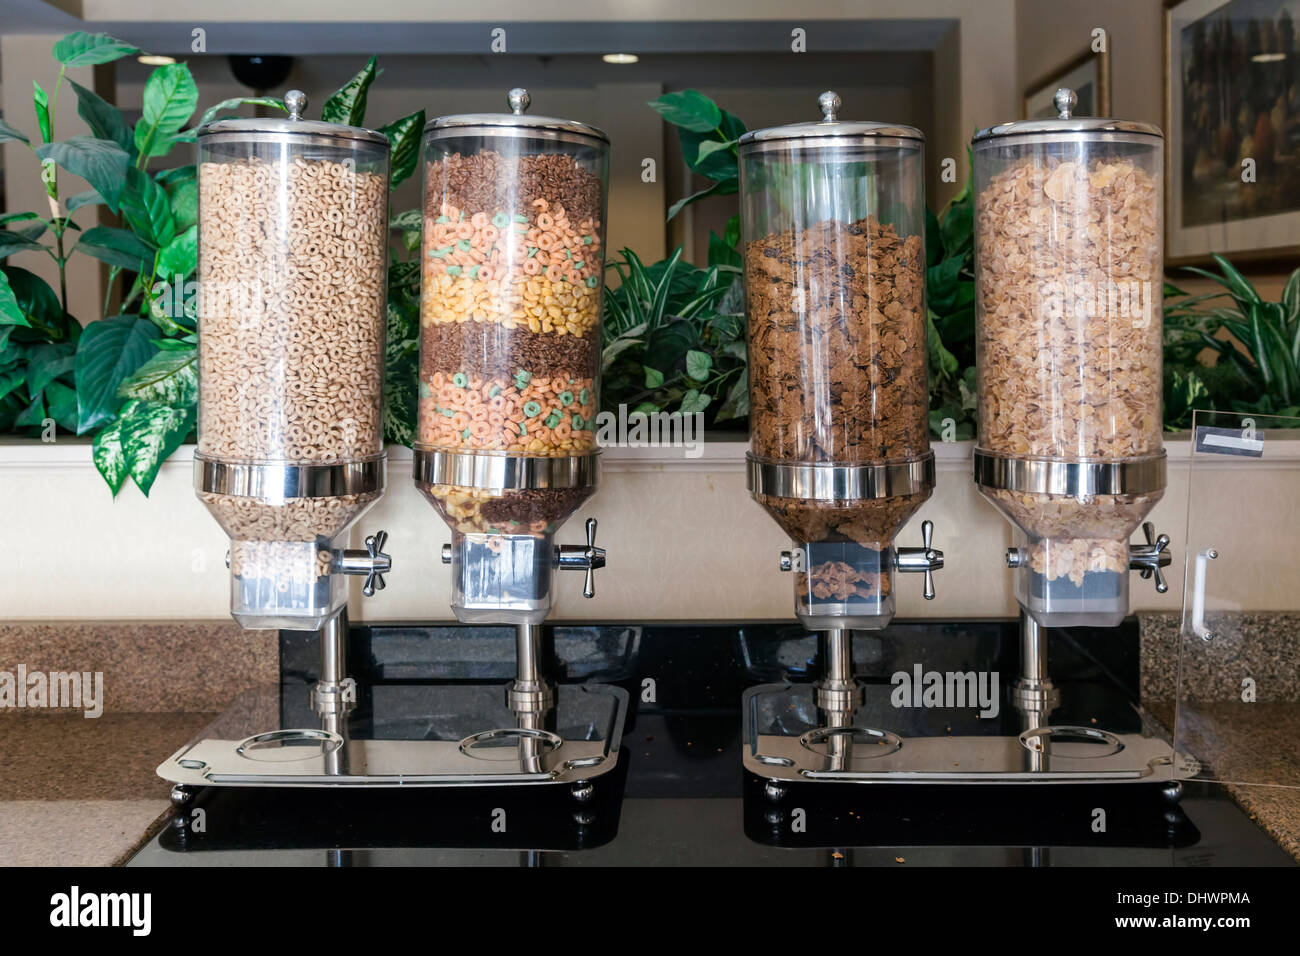 Céréales sèches commerciales distributeurs à l'aide de l'outil libre-service petit déjeuner-bar dans l'hôtel Best Western de Dillsboro, North Carolina, USA. Banque D'Images